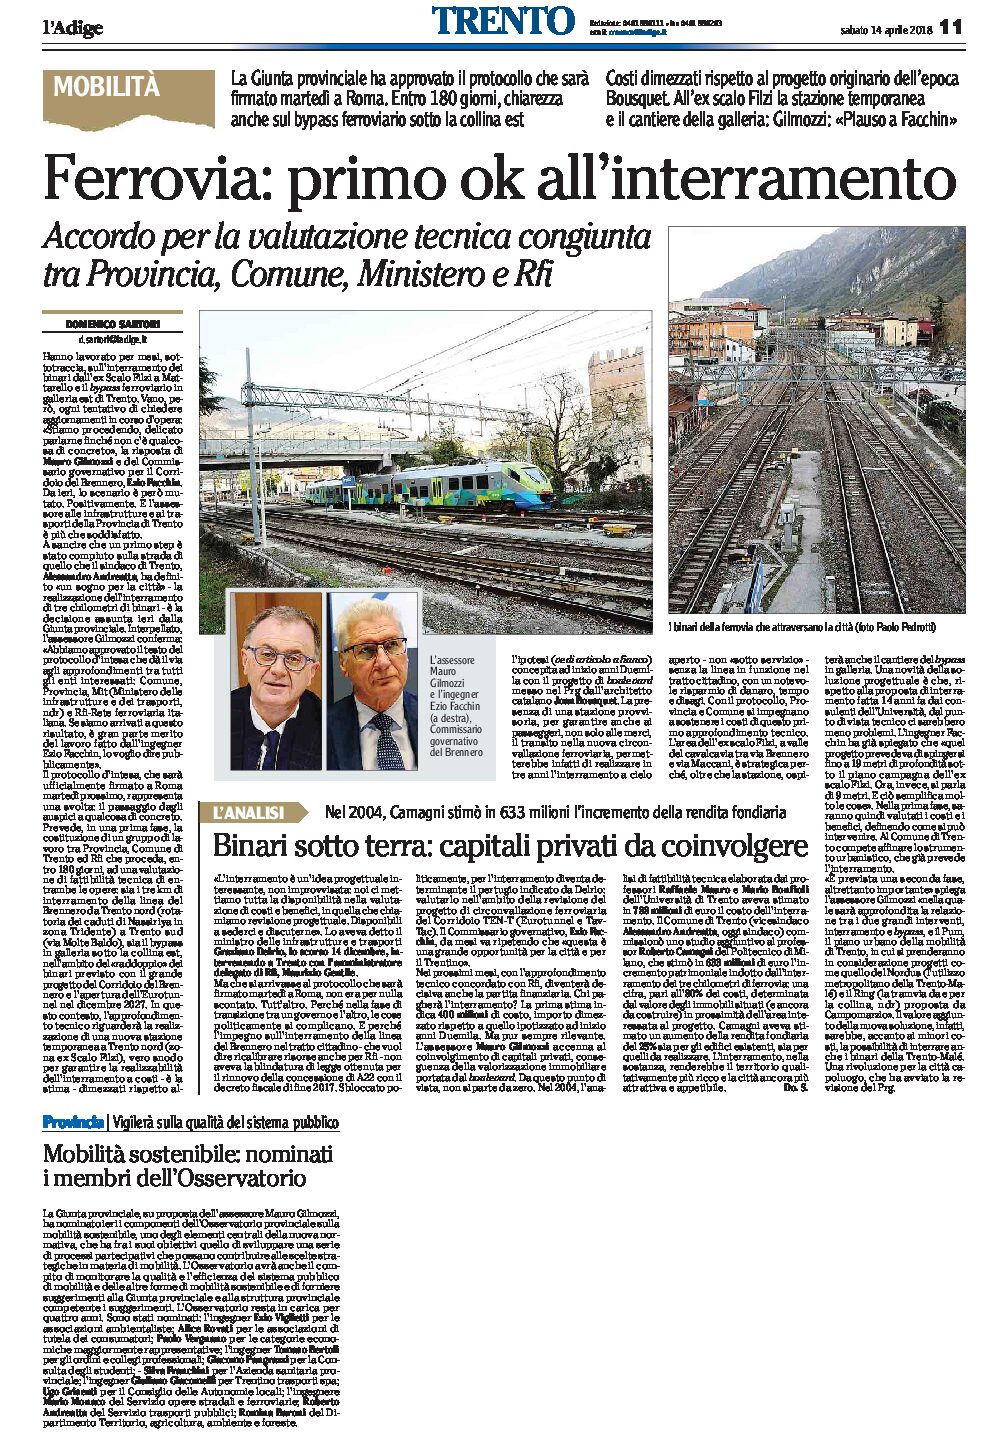 Trento, ferrovia: primo ok all’interramento. Accordo per la valutazione tecnica congiunta